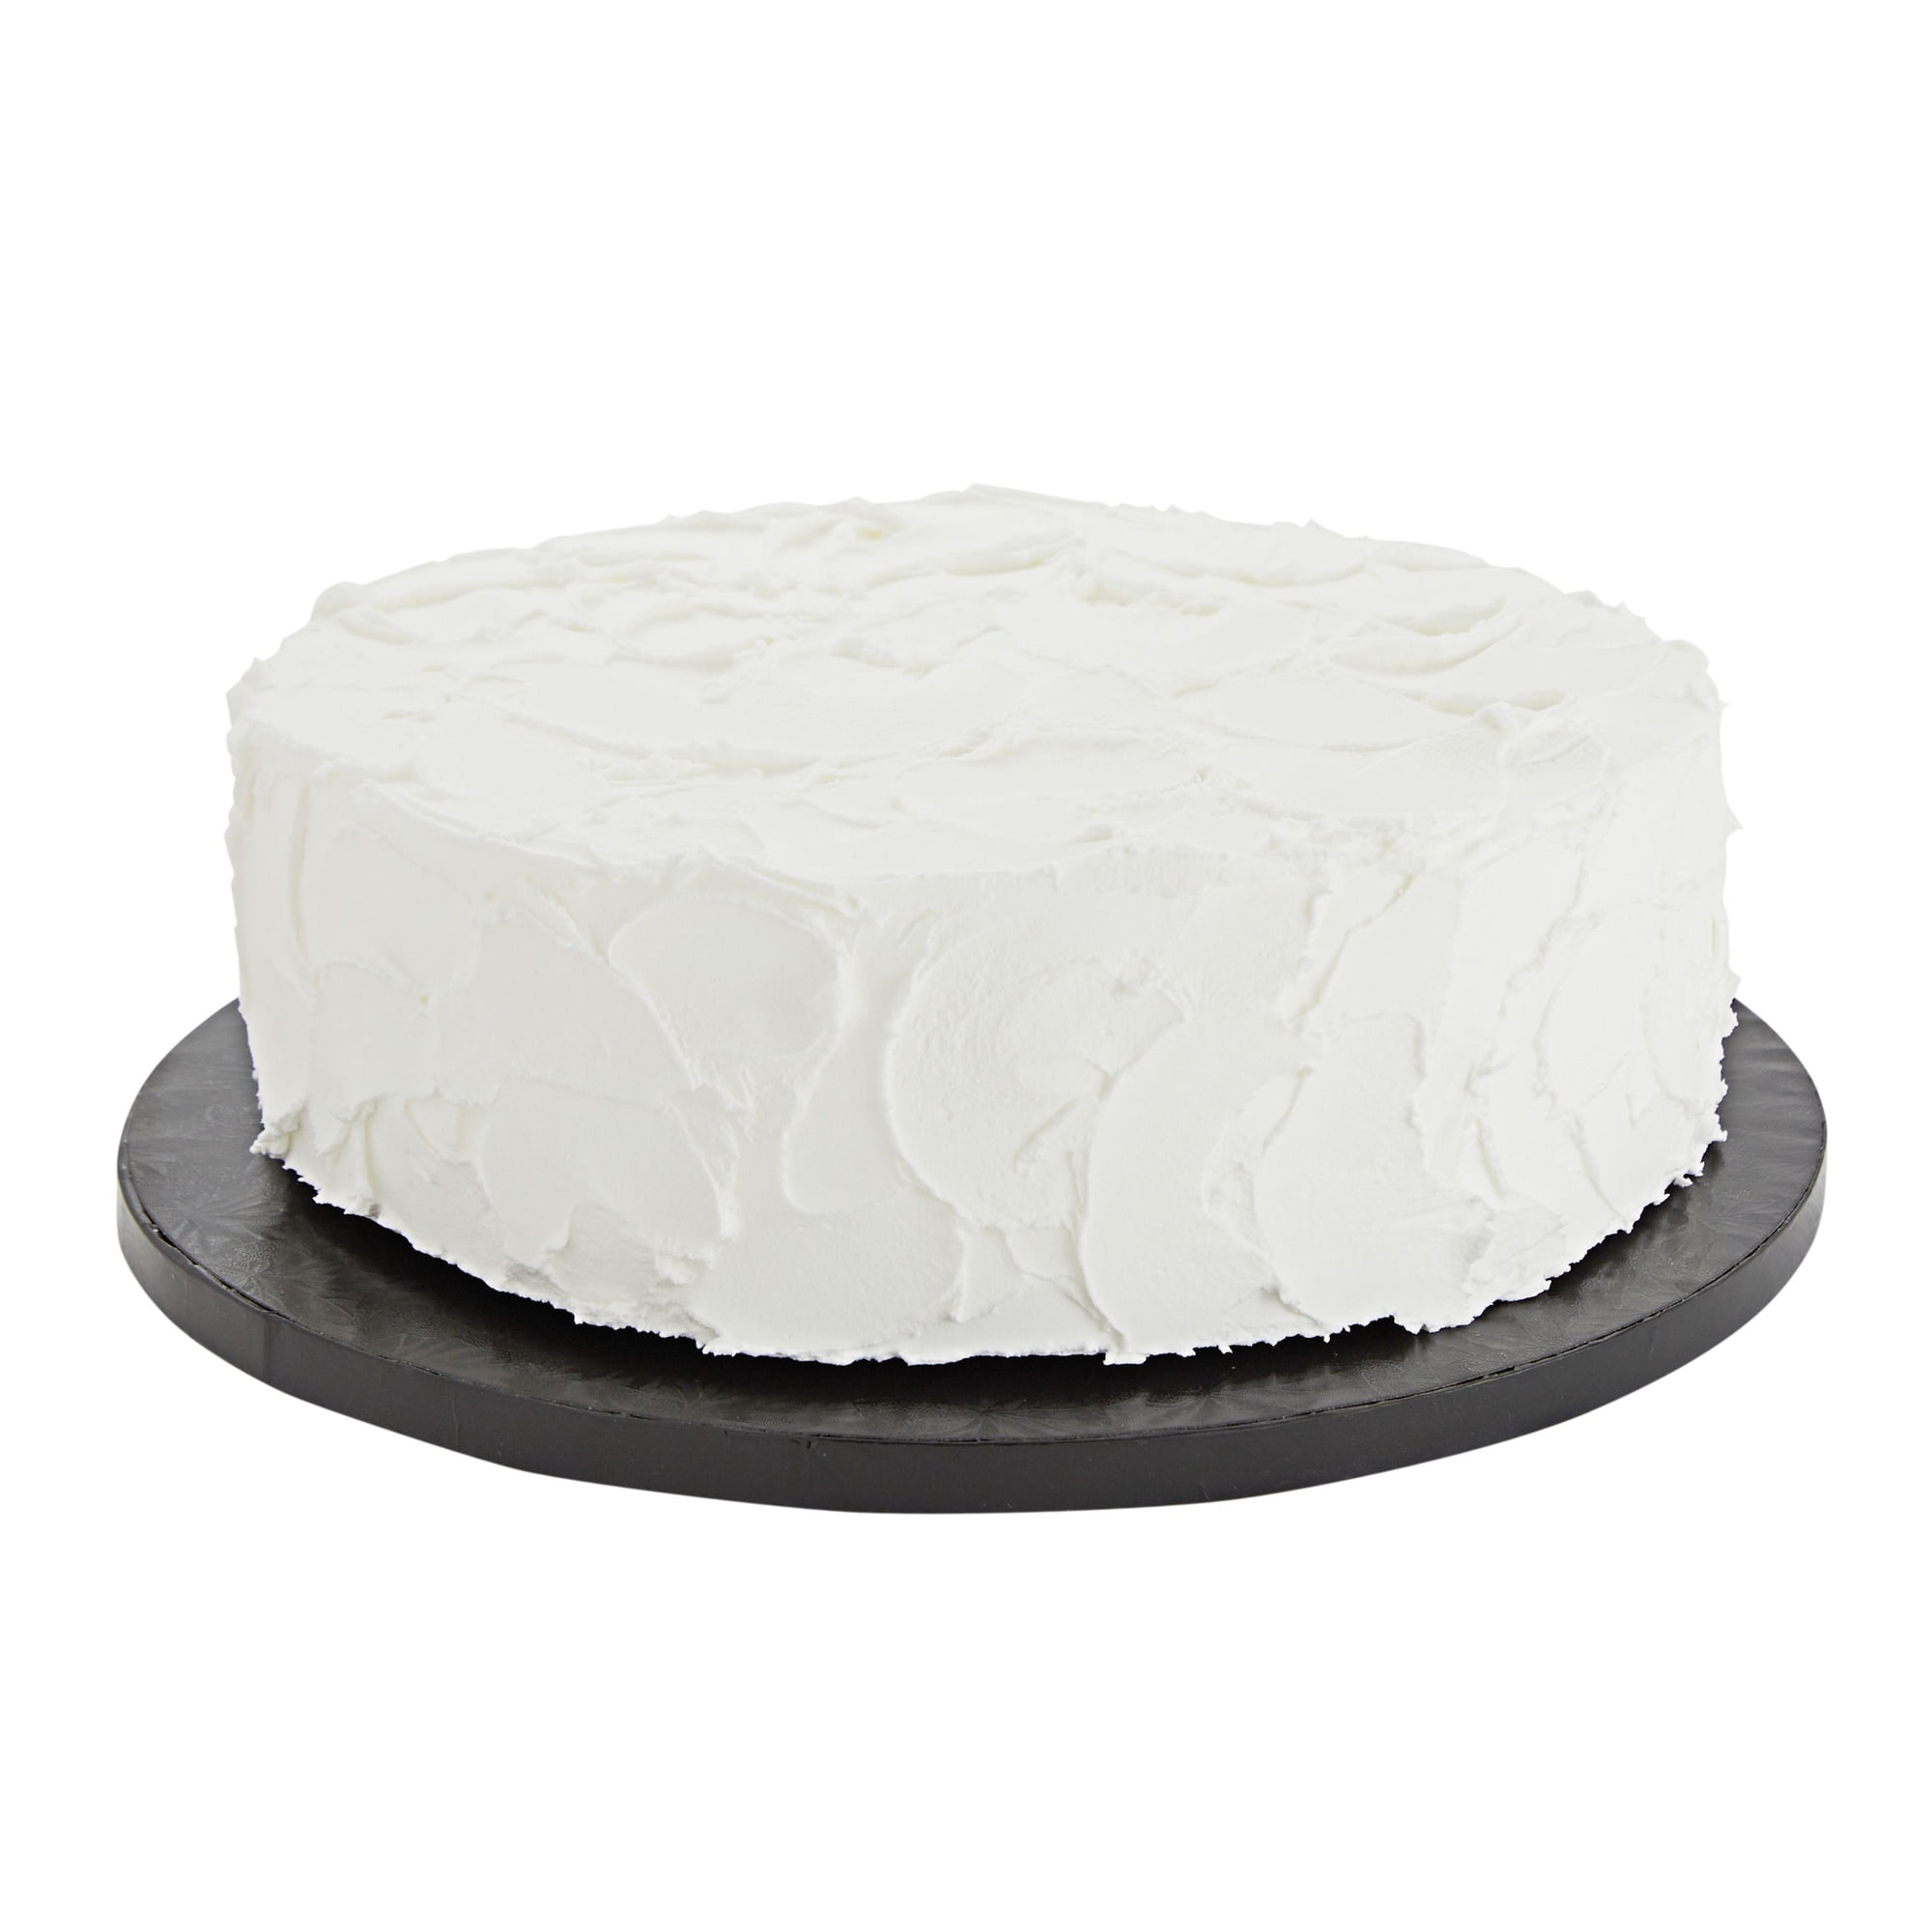 Round cake set d12.5x10.5, d10x9.5 d14.8x12, d17.2x13 cm – Useful&Rare